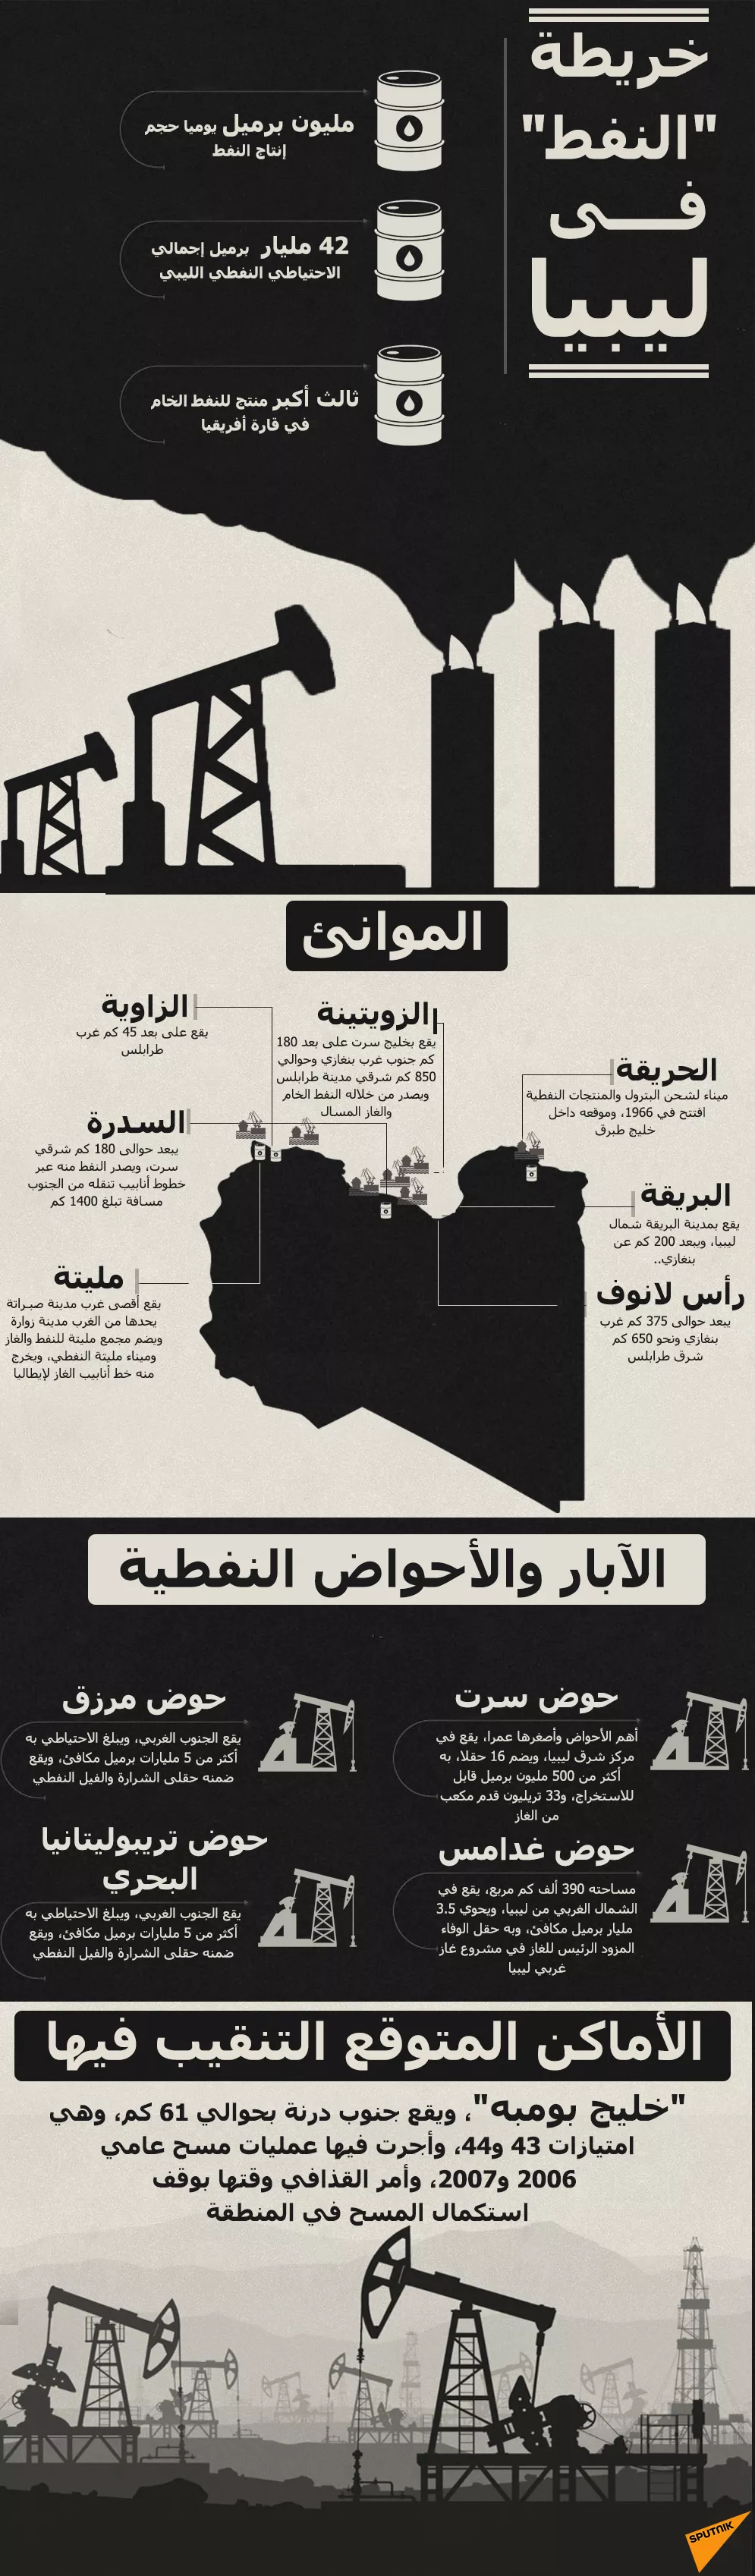 إنفوجراف.. خريطة آبار النفط في ليبيا